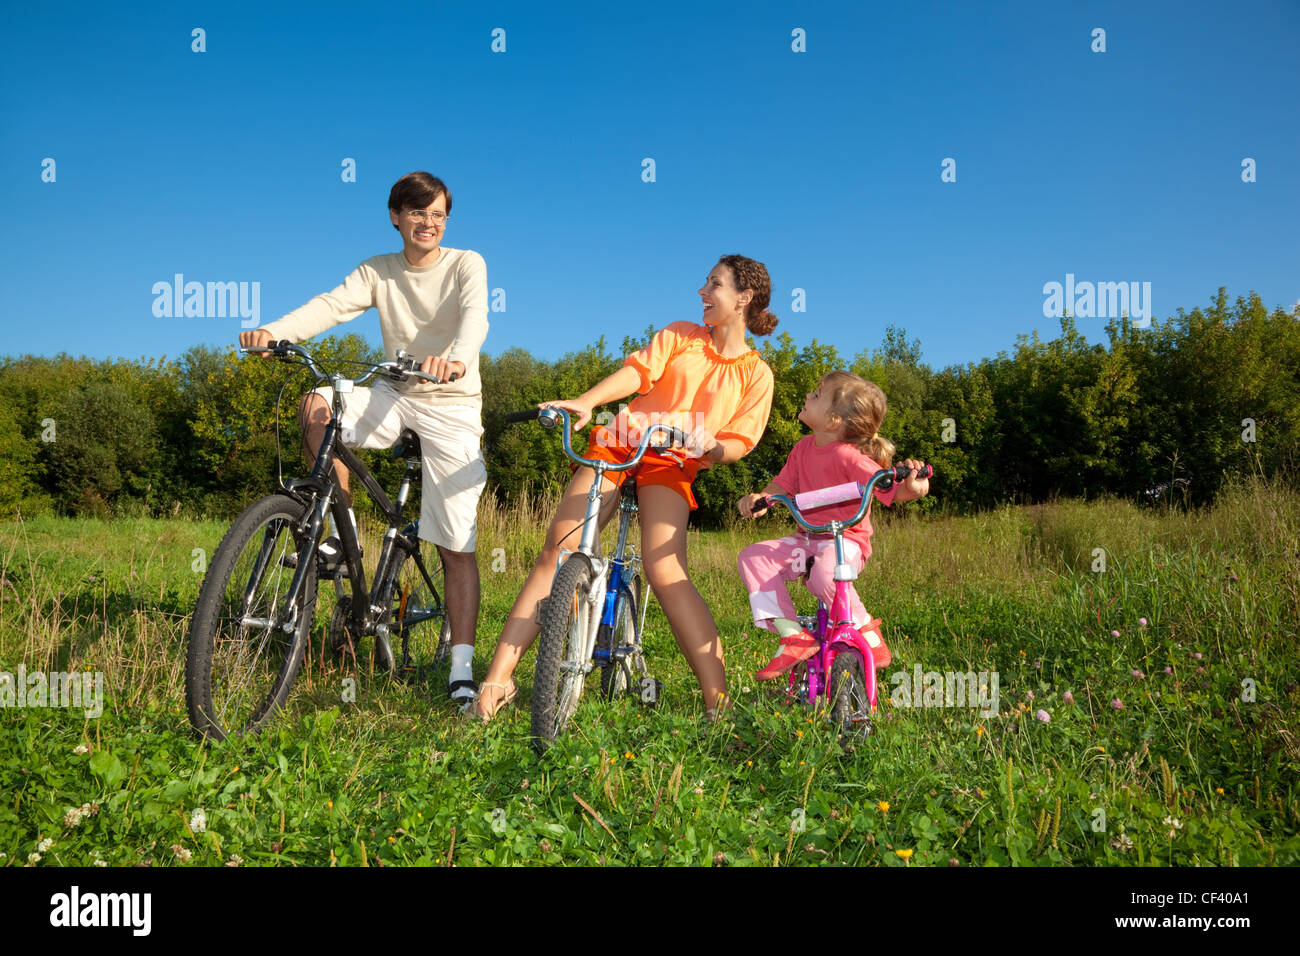 Famiglia da 3 persone su biciclette nel paese. La mamma con la figlia guarda il papà. Foto Stock